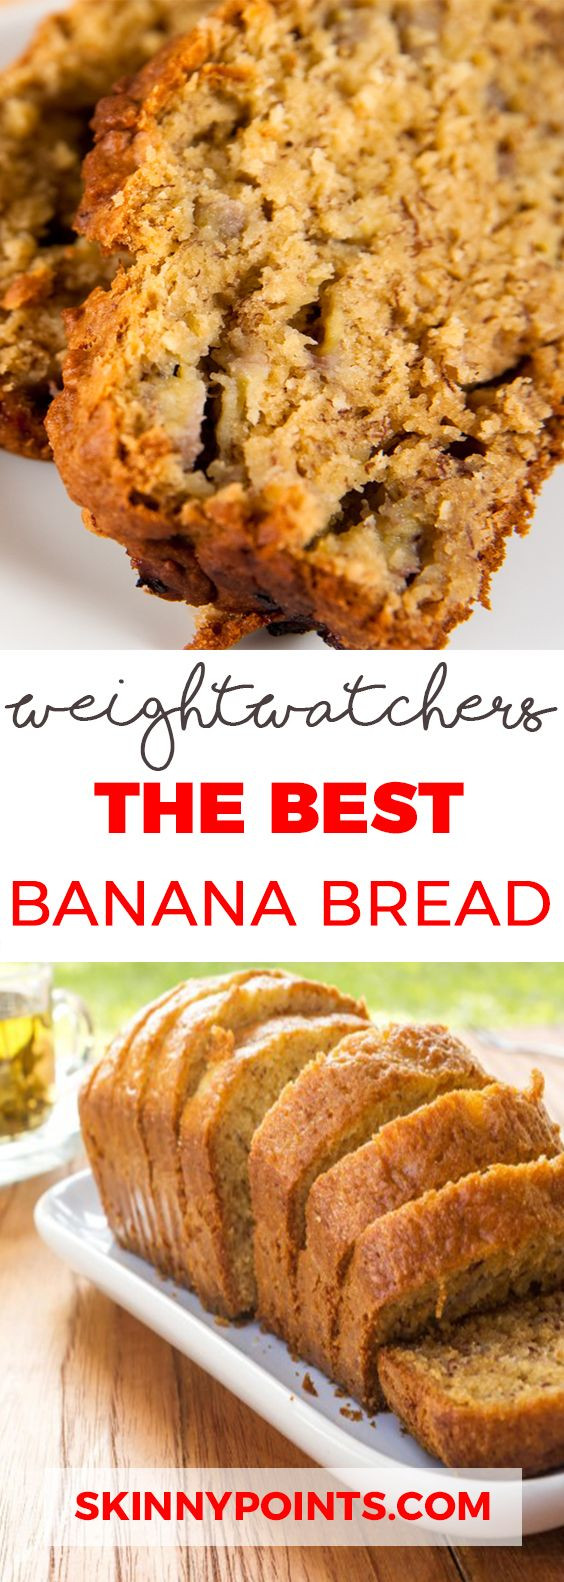 Weight Watchers Smart Points Desserts
 25 Best Weight Watchers Desserts Recipes with SmartPoints